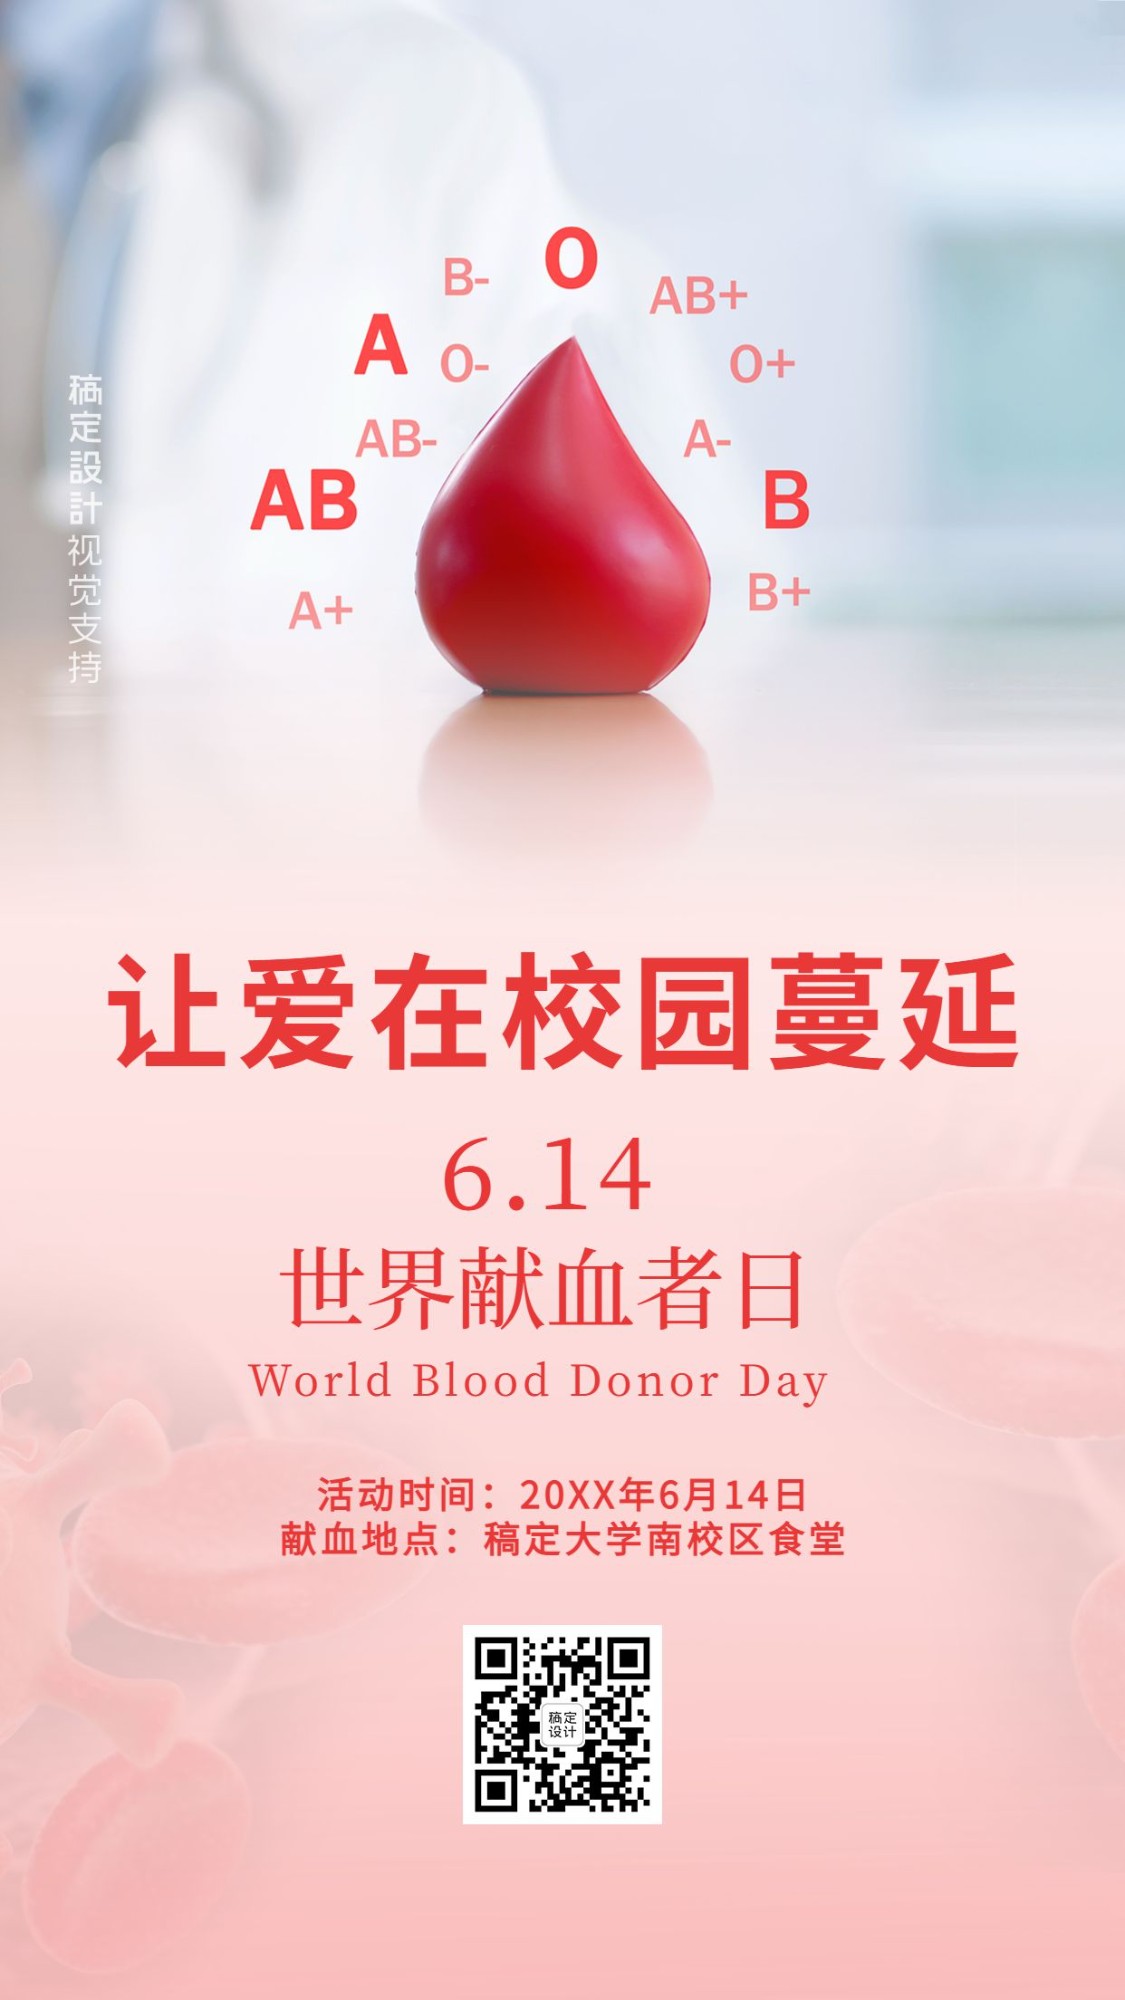 世界献血日校园宣传活动海报预览效果